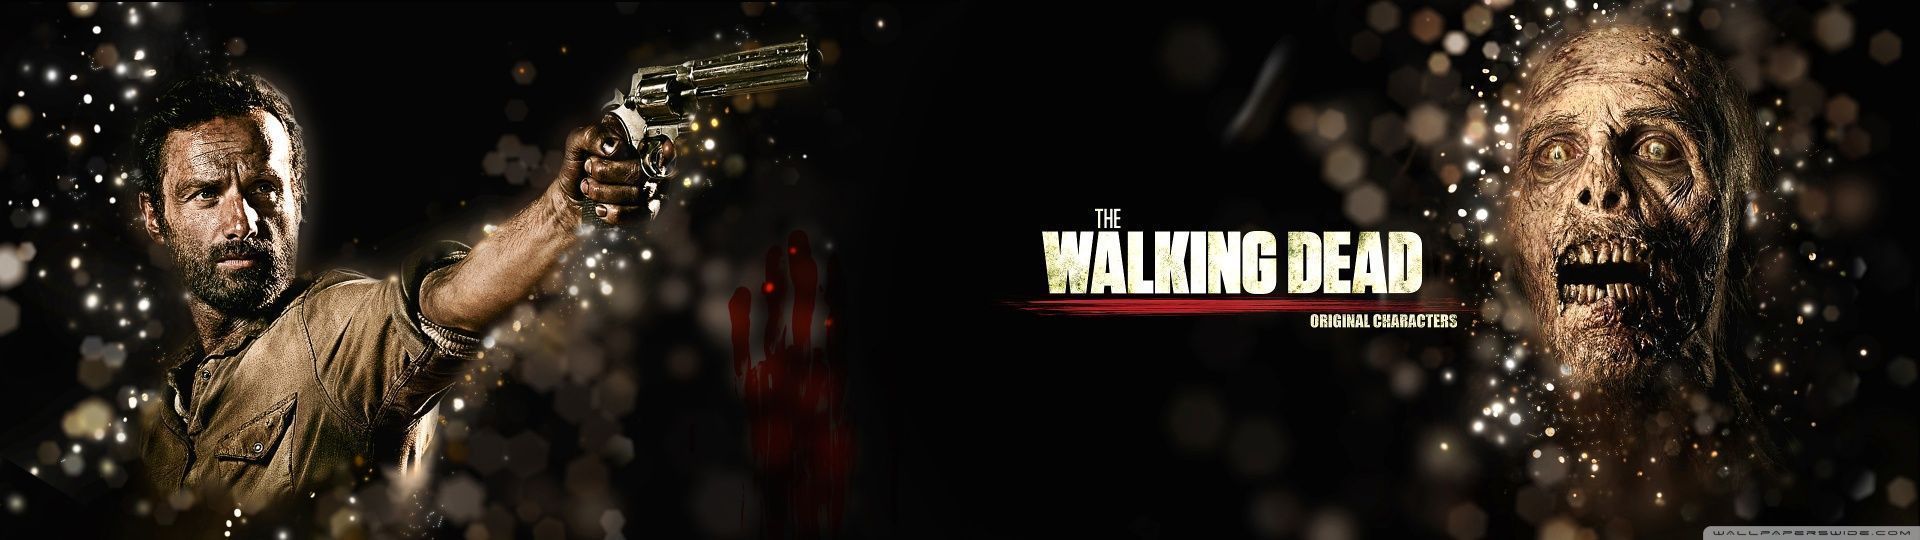 The Walking Dead HD desktop wallpaper : Widescreen : High ...